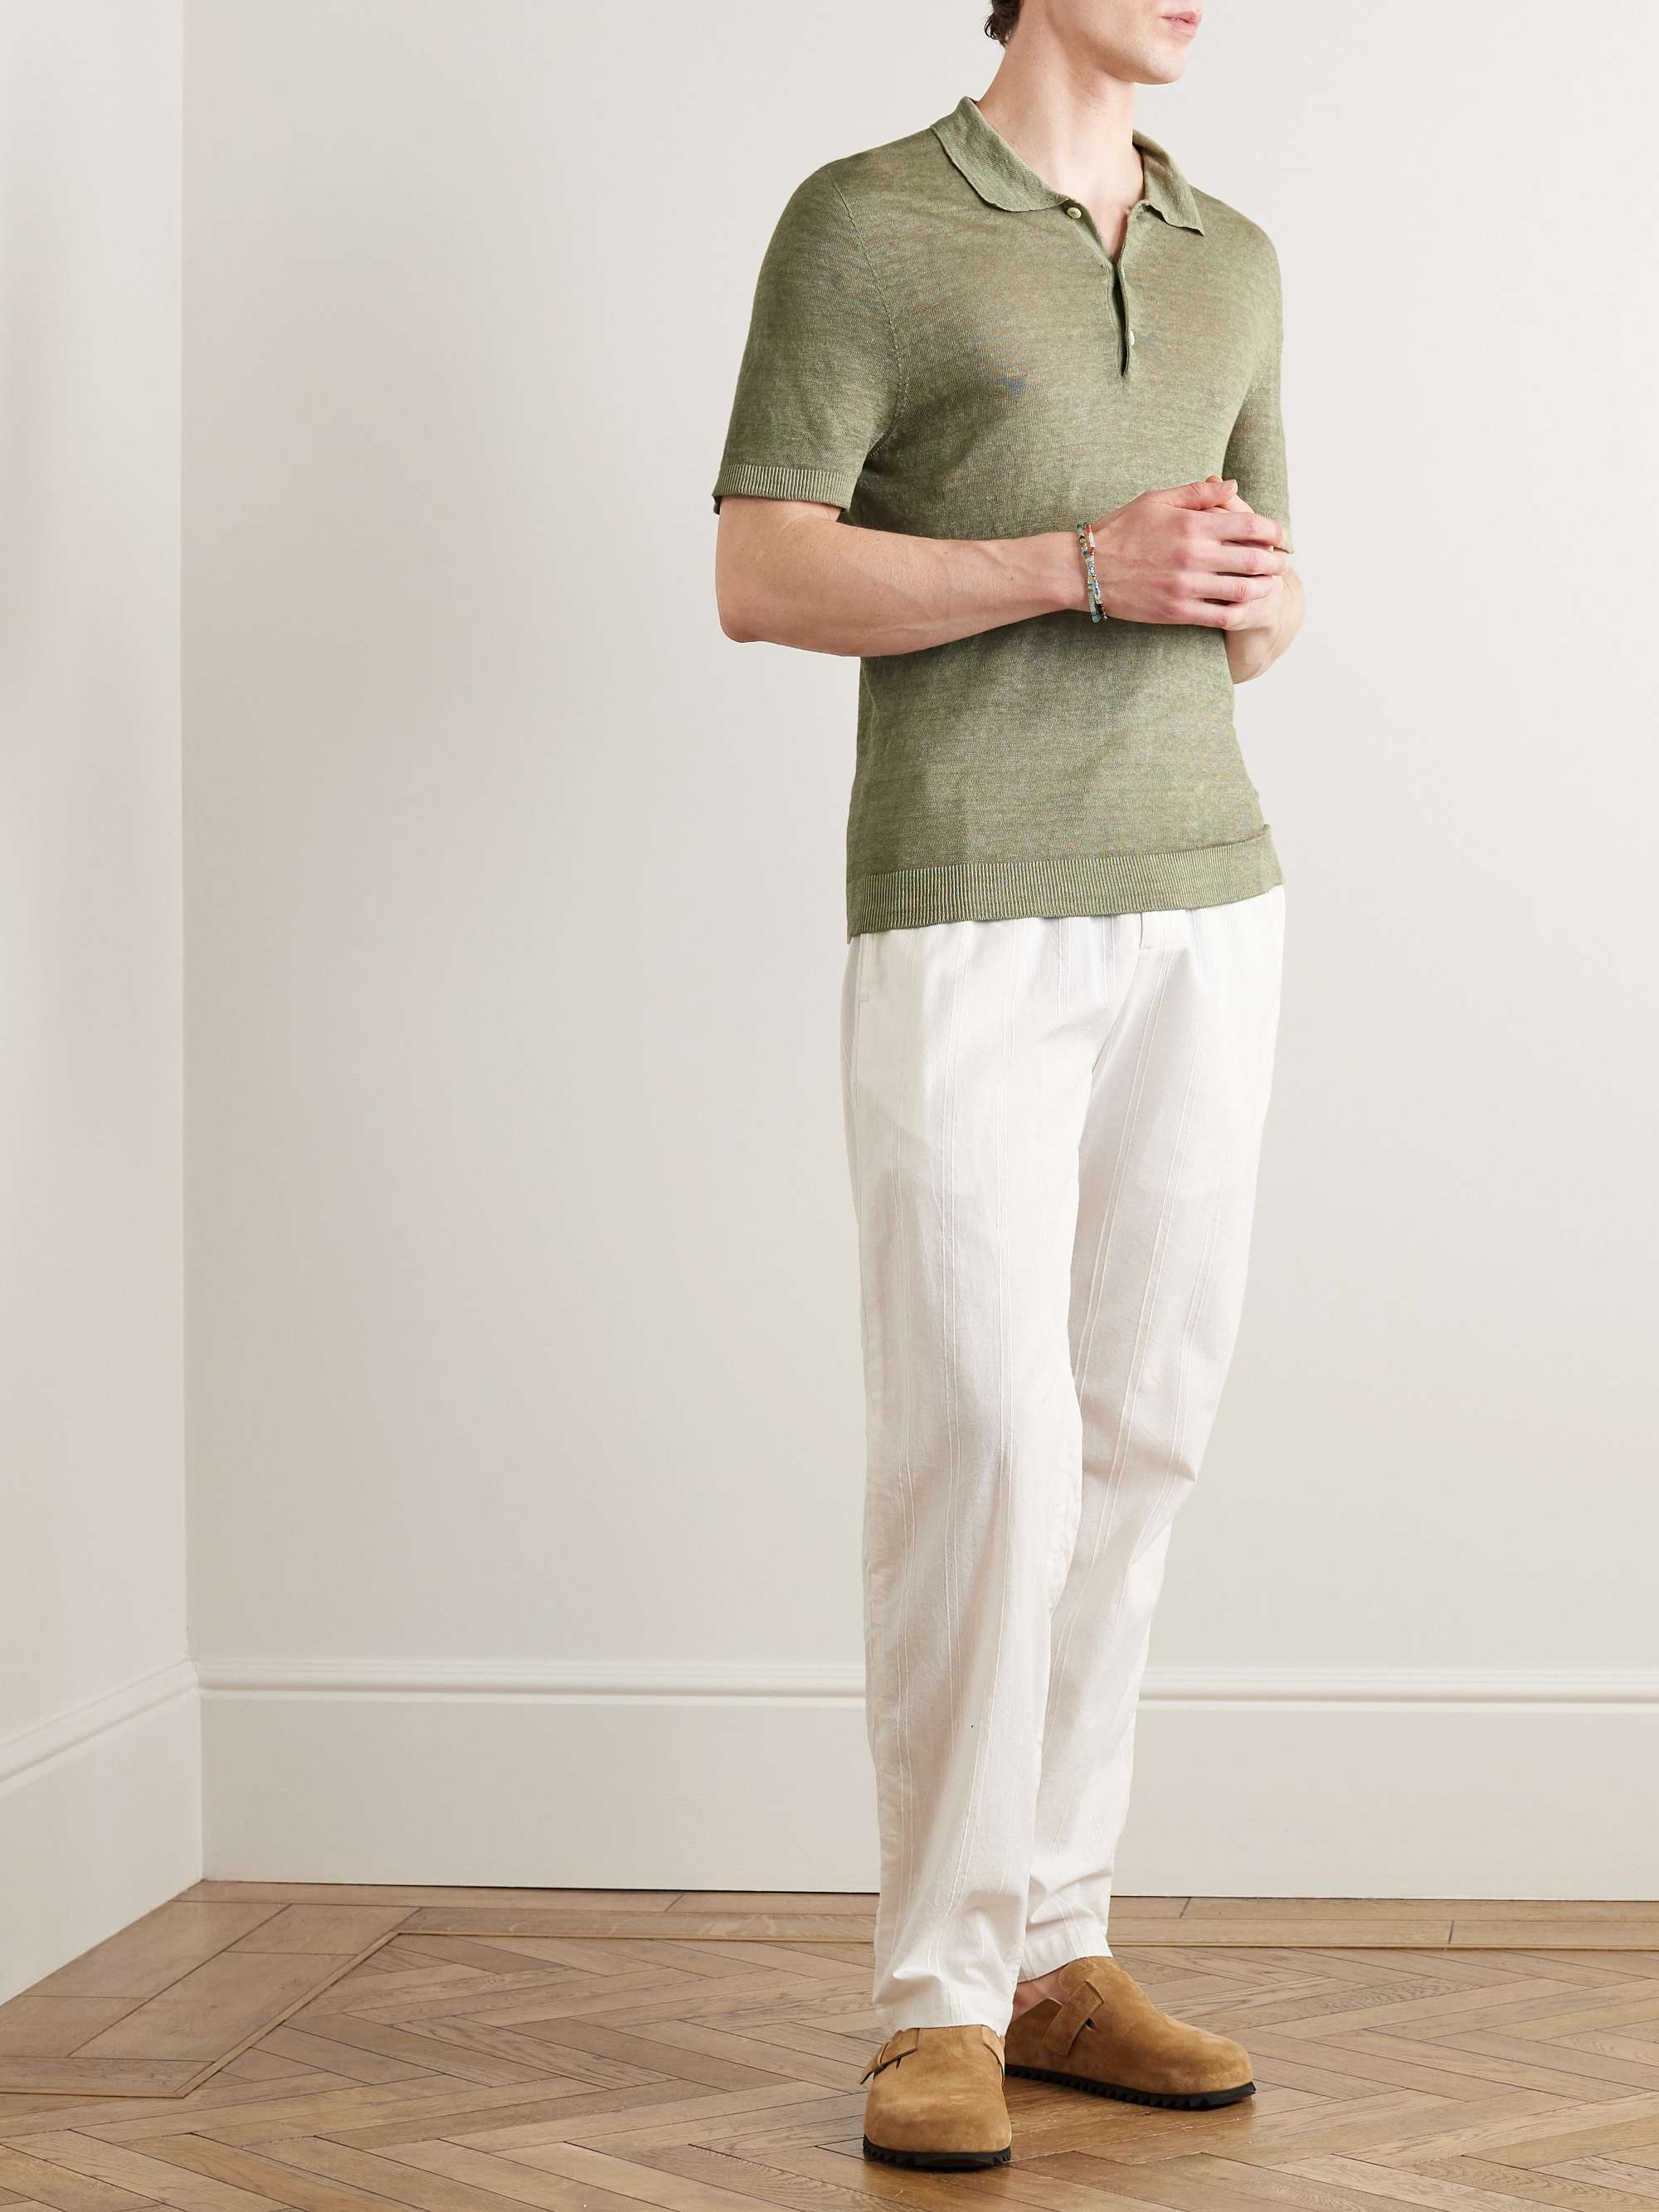 120% LINO Linen Polo Shirt for Men | MR PORTER